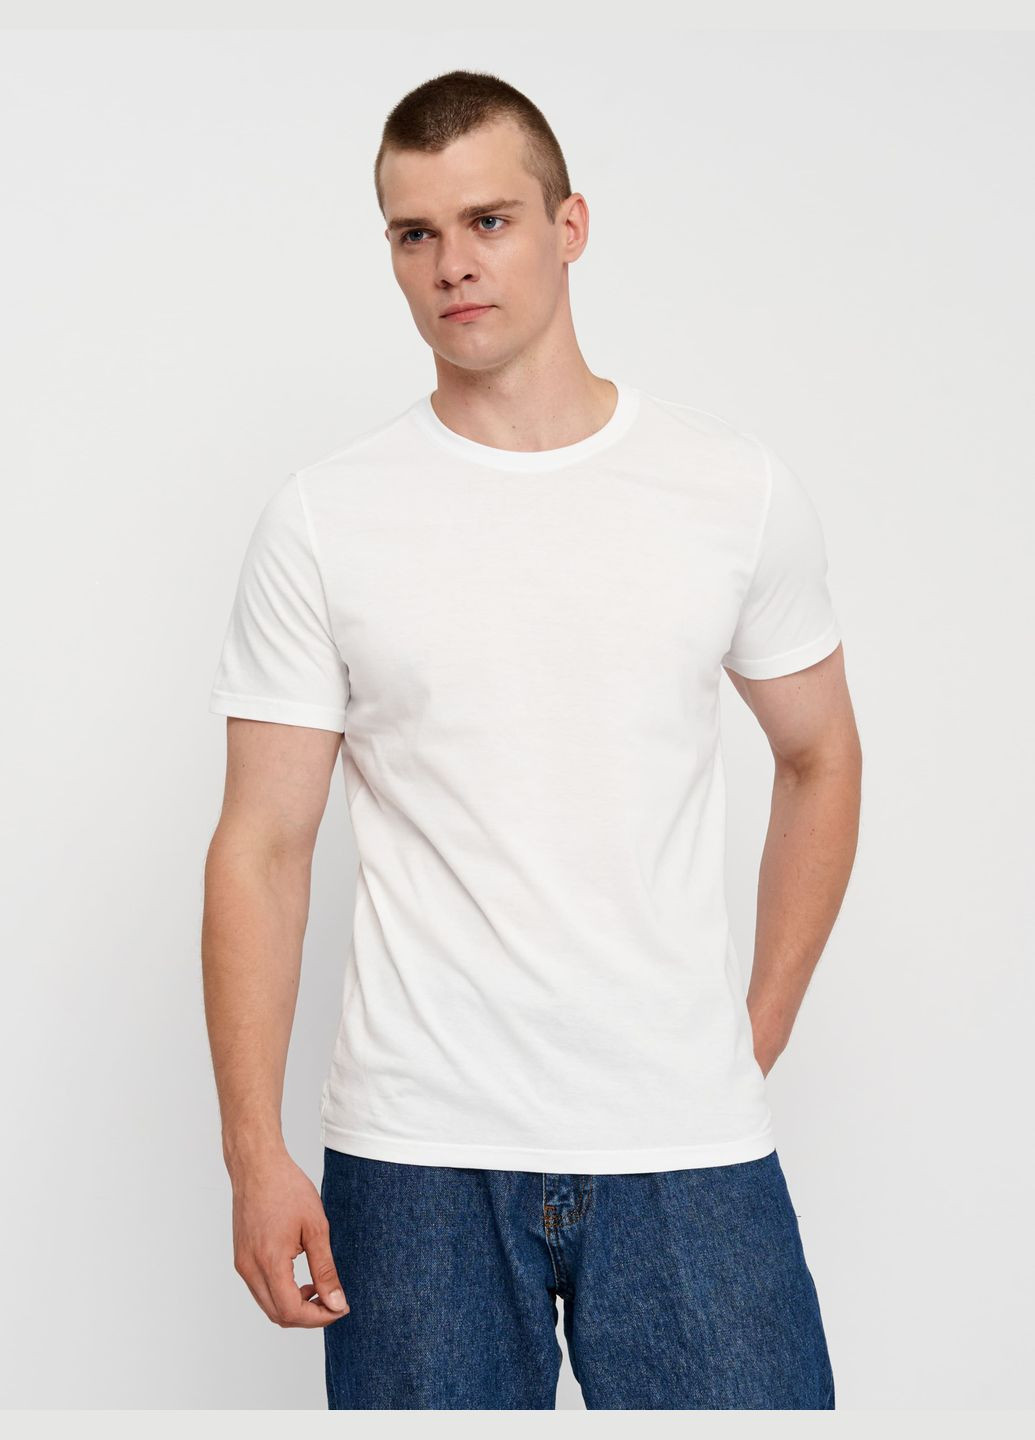 Біла футболка для чоловіків базова з коротким рукавом Роза